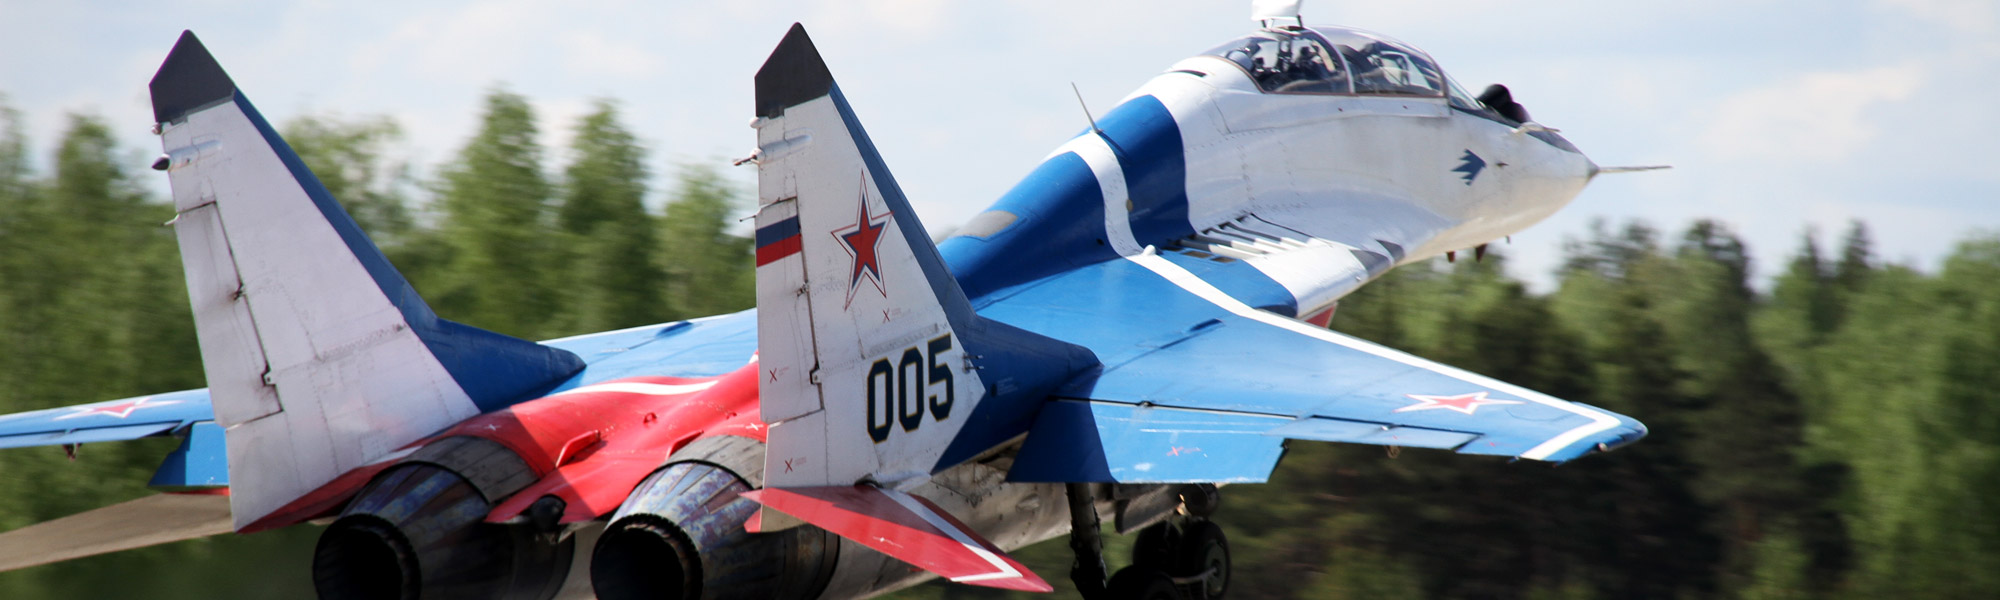 MiG-29 Fulcrum: Abfangjäger und Mehrzweck-Kampfflugzeug